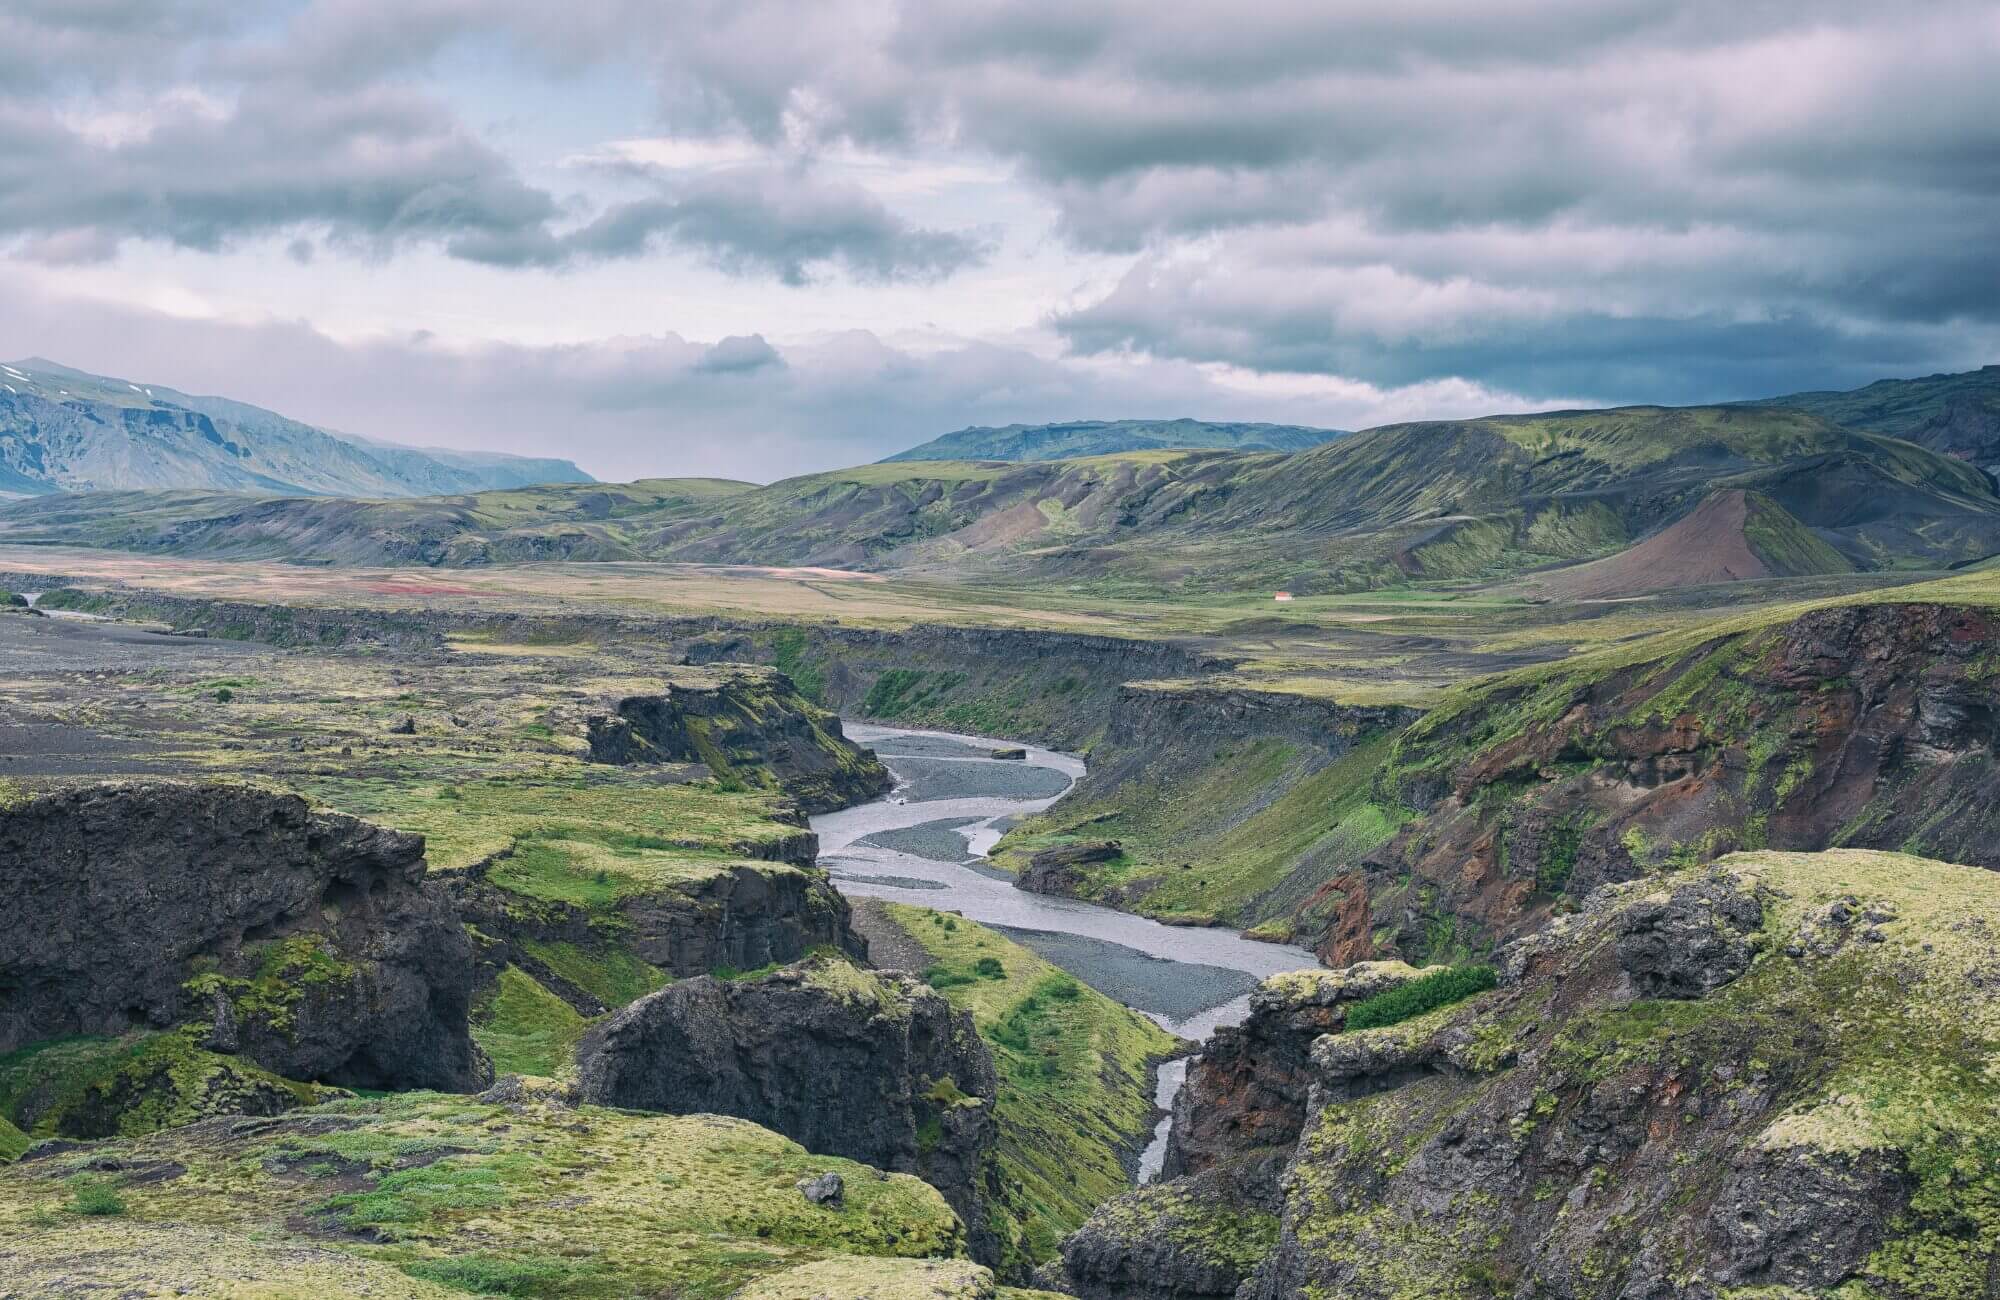 Þórsmörk ligger på det sydlige Island mellem gletsjerne Tindfjallajökull og Eyjafjallajökull.